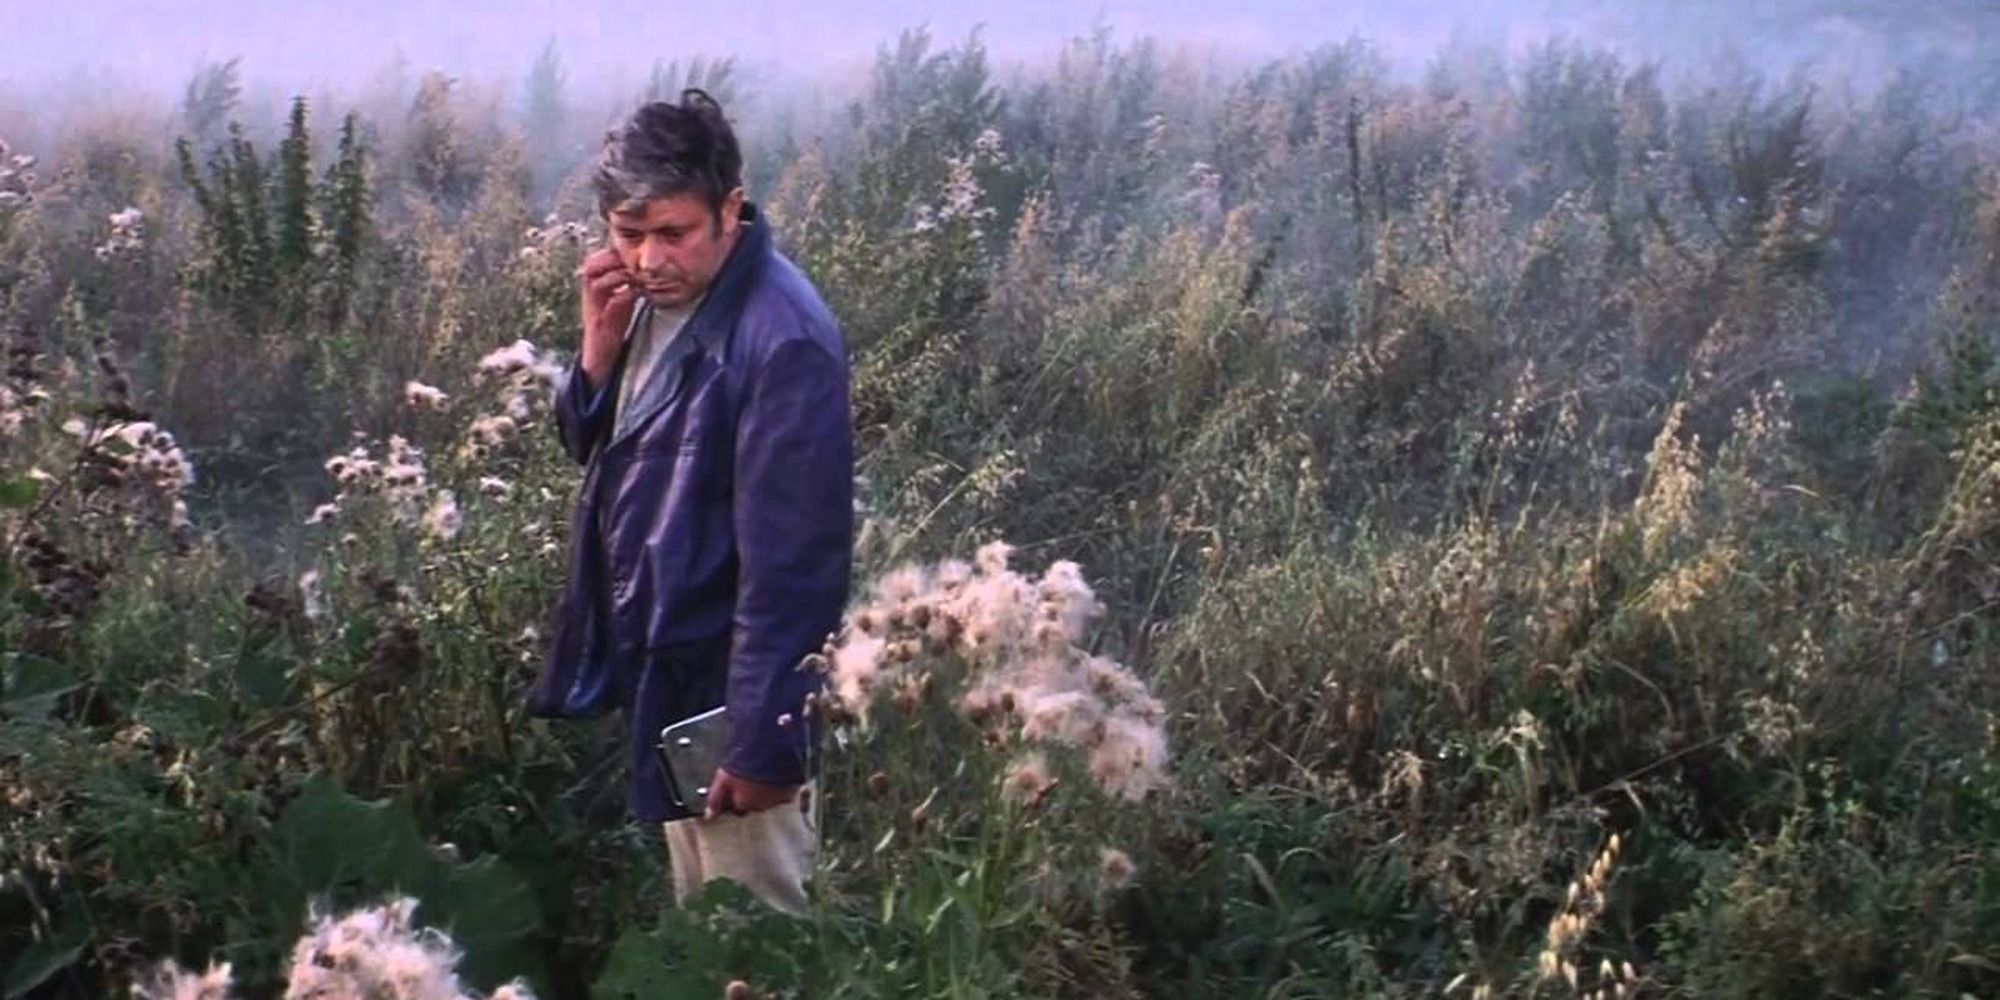 Un homme contemple son environnement dans un champ herbeux rempli de plantes luxuriantes.